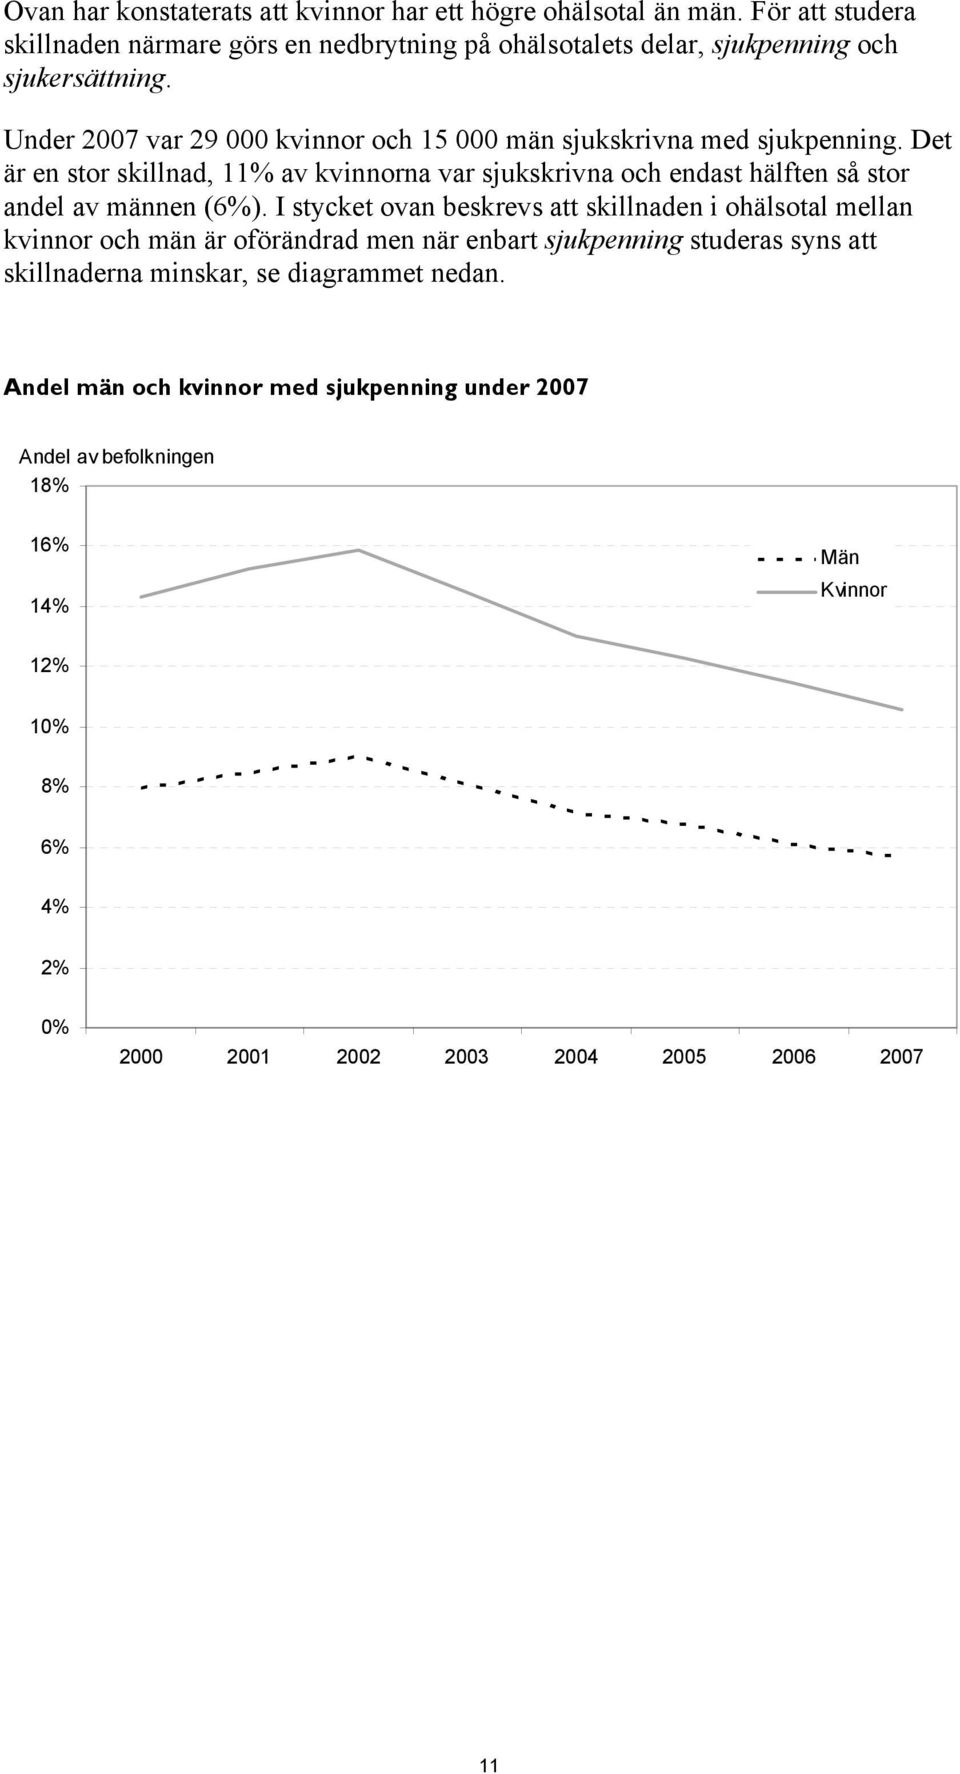 Under 2007 var 29 000 kvinnor och 15 000 män sjukskrivna med sjukpenning.